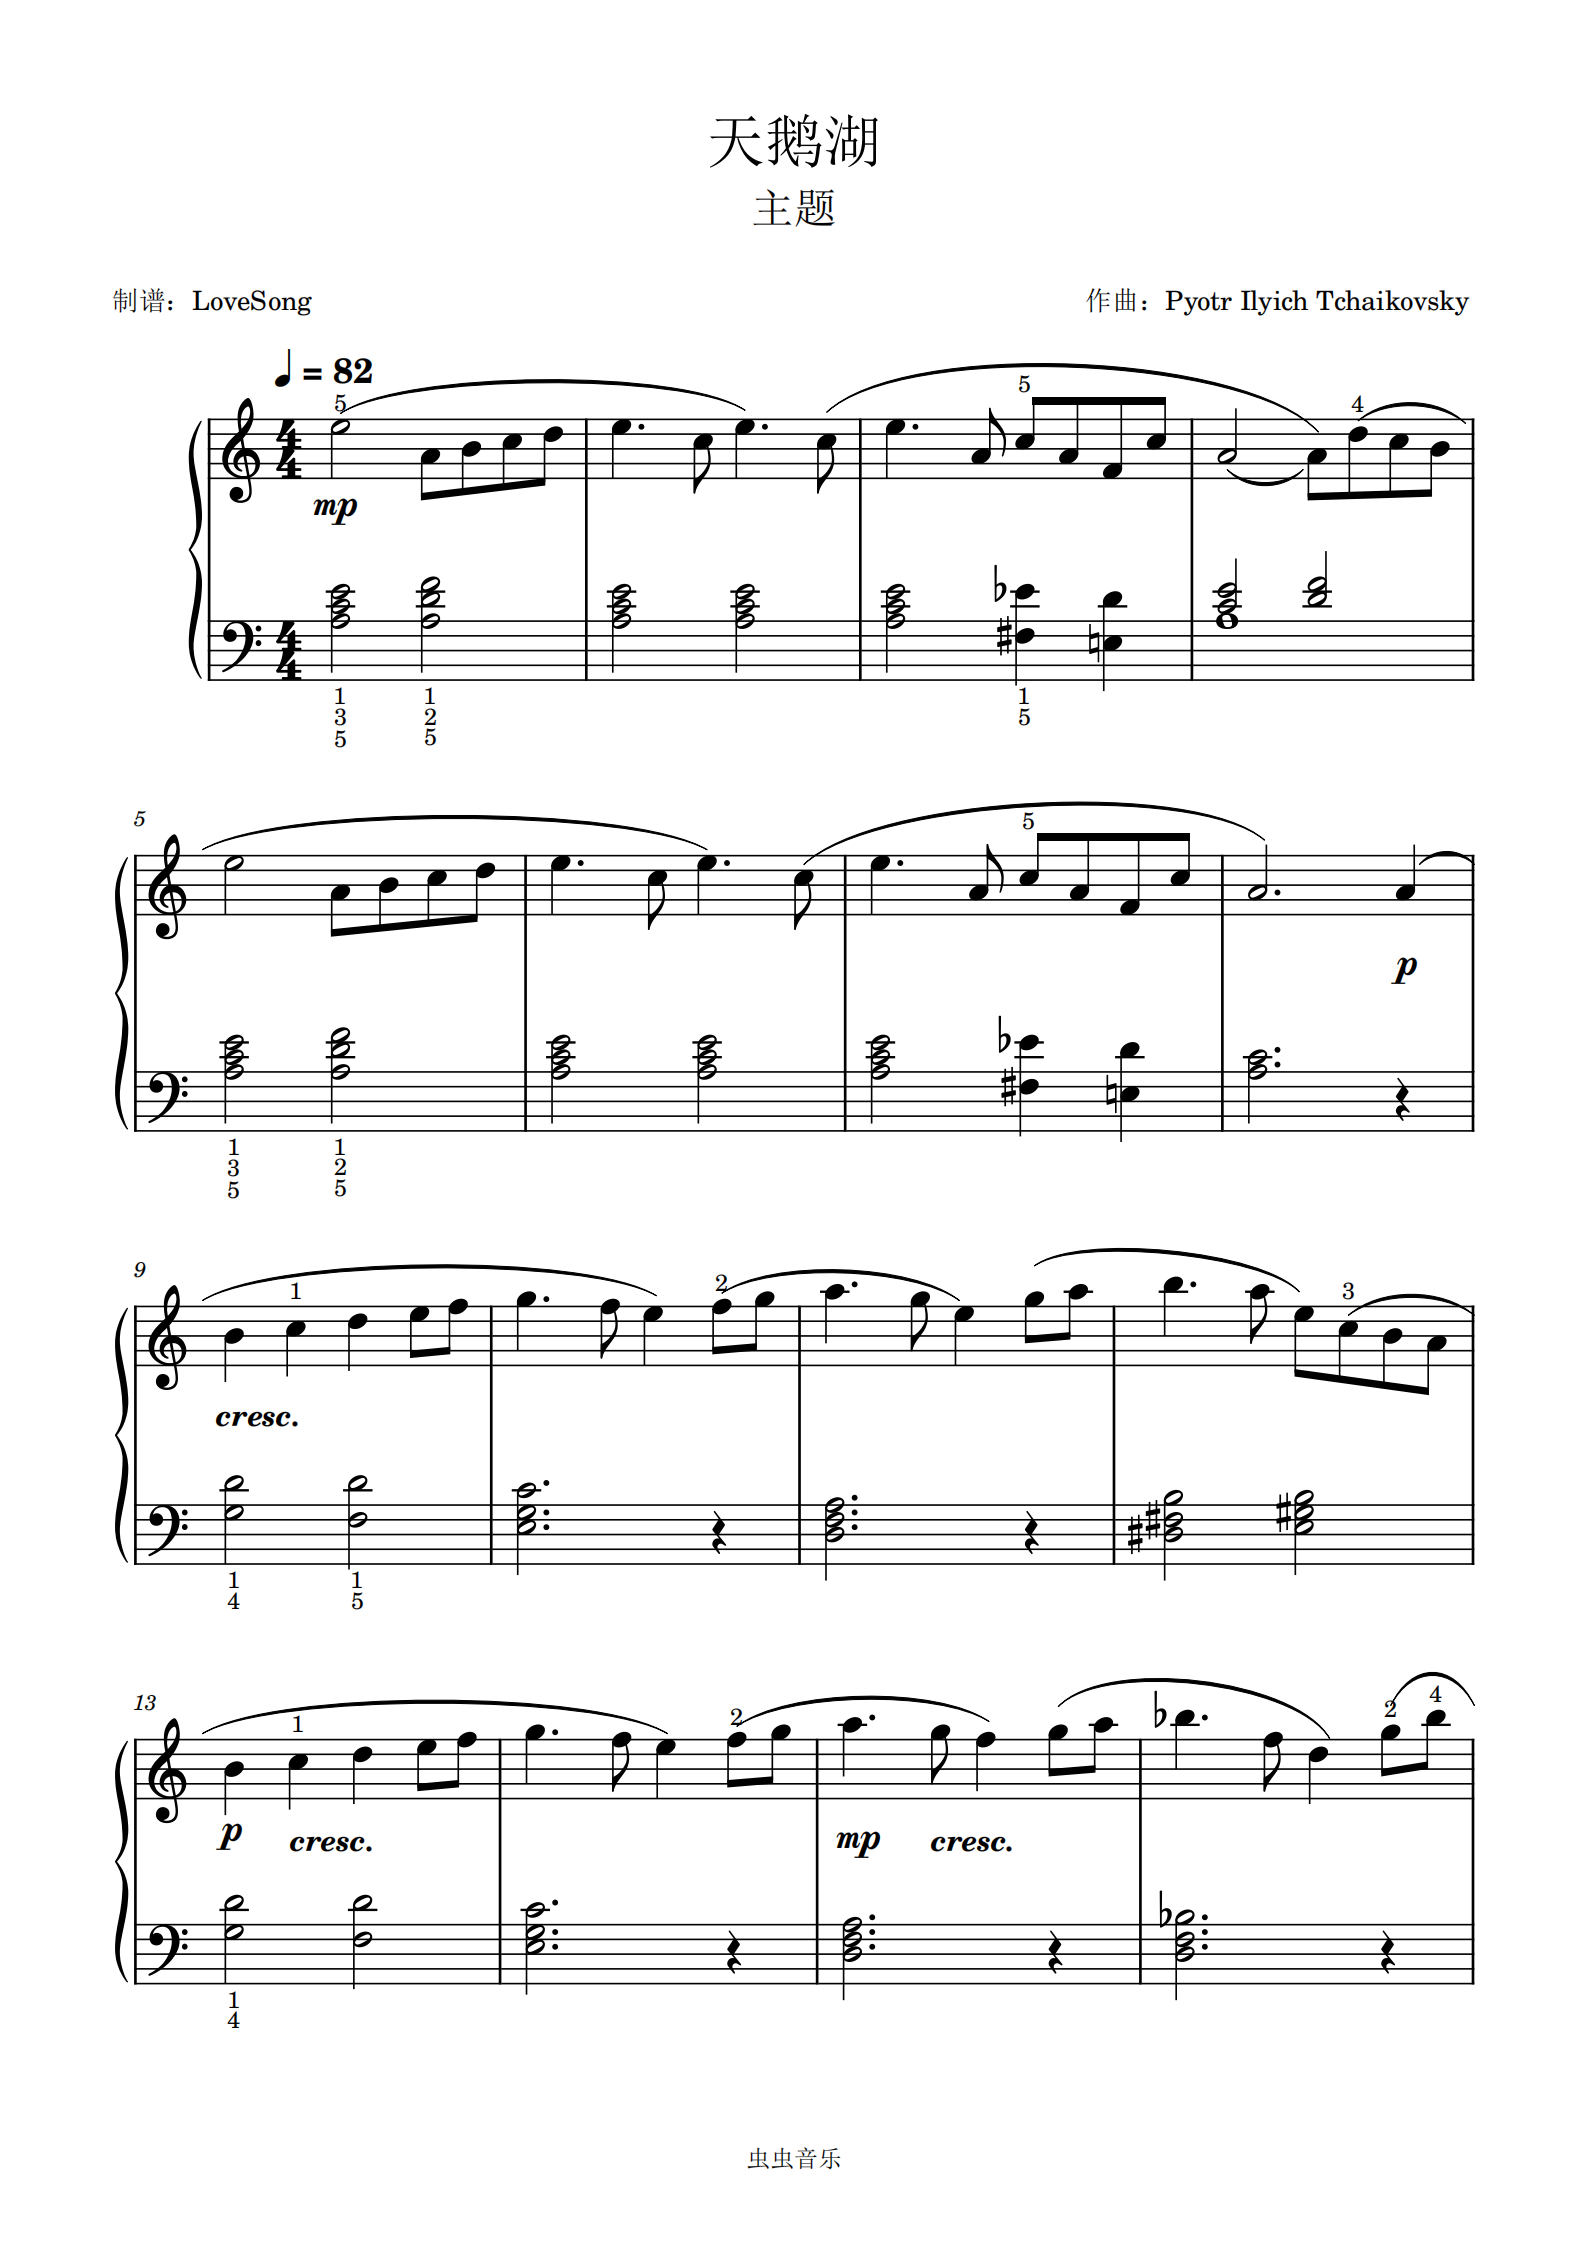 天鹅湖主题 简单版,天鹅湖主题 简单版钢琴谱,天鹅湖